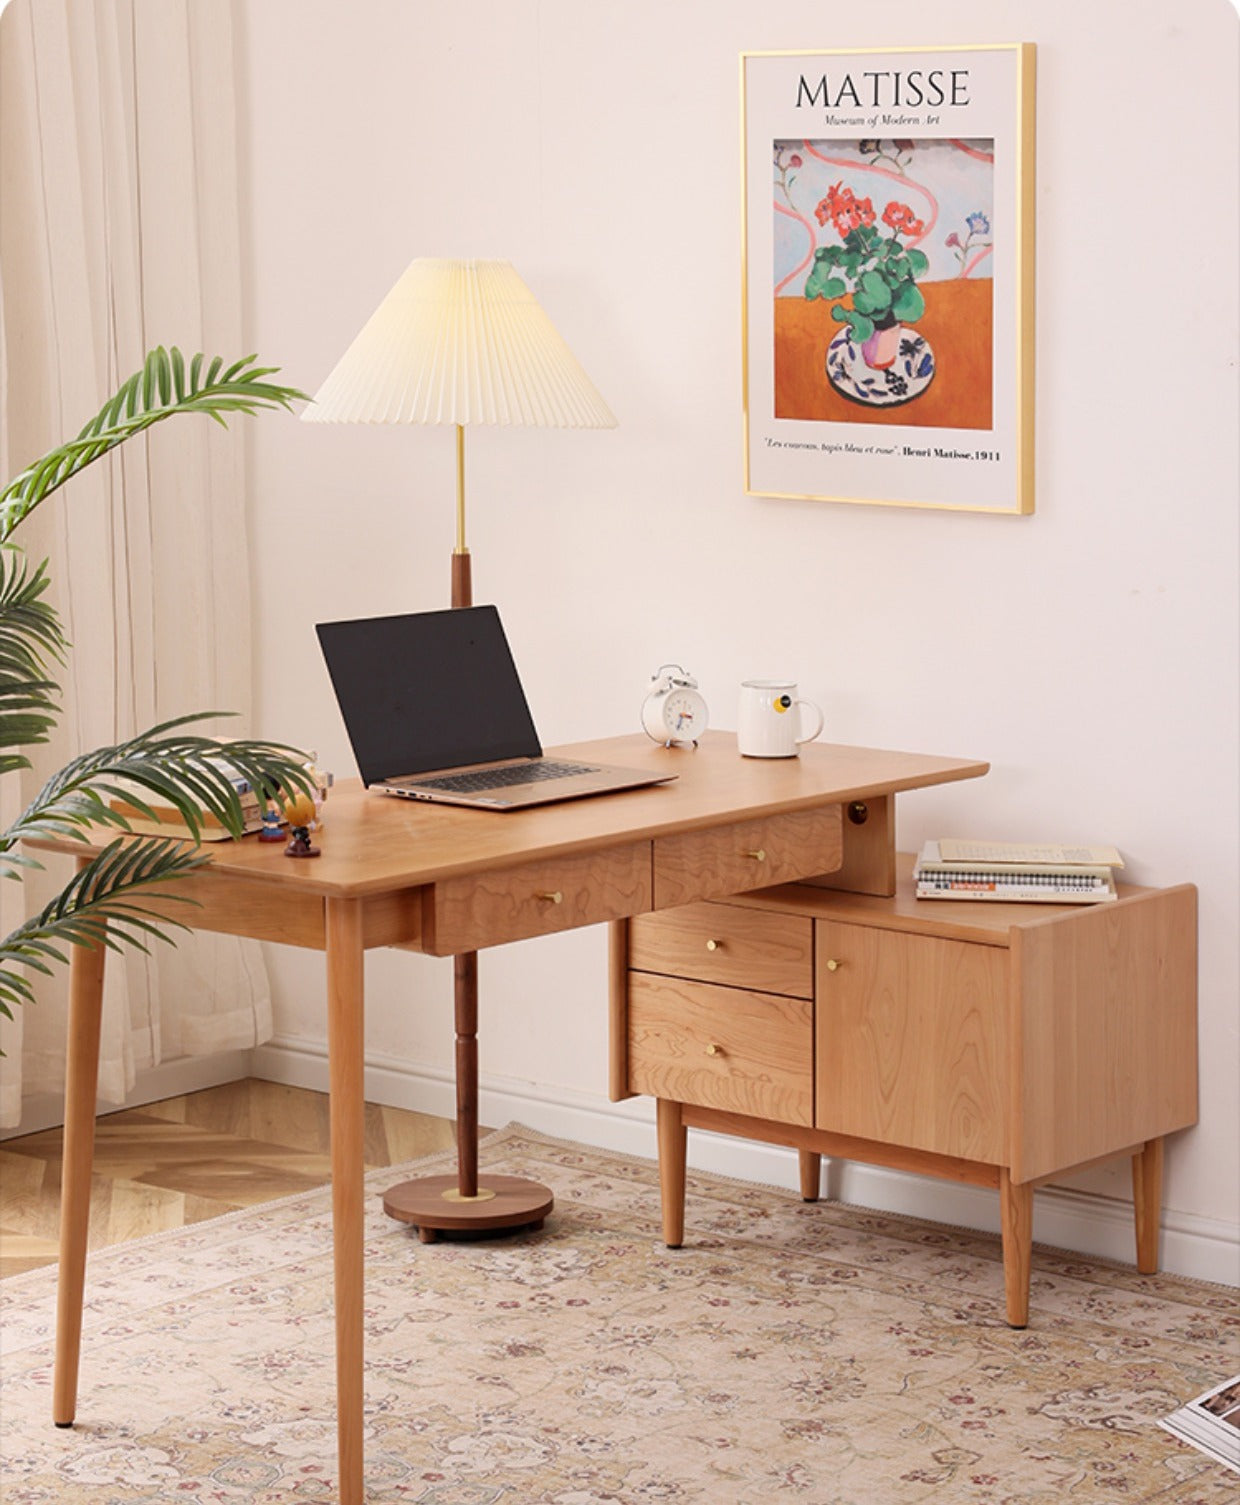 Körsbärsskrivbord med bokhylla, l-format körsbärsskrivbord, skrivbord i massivt körsbärsträ